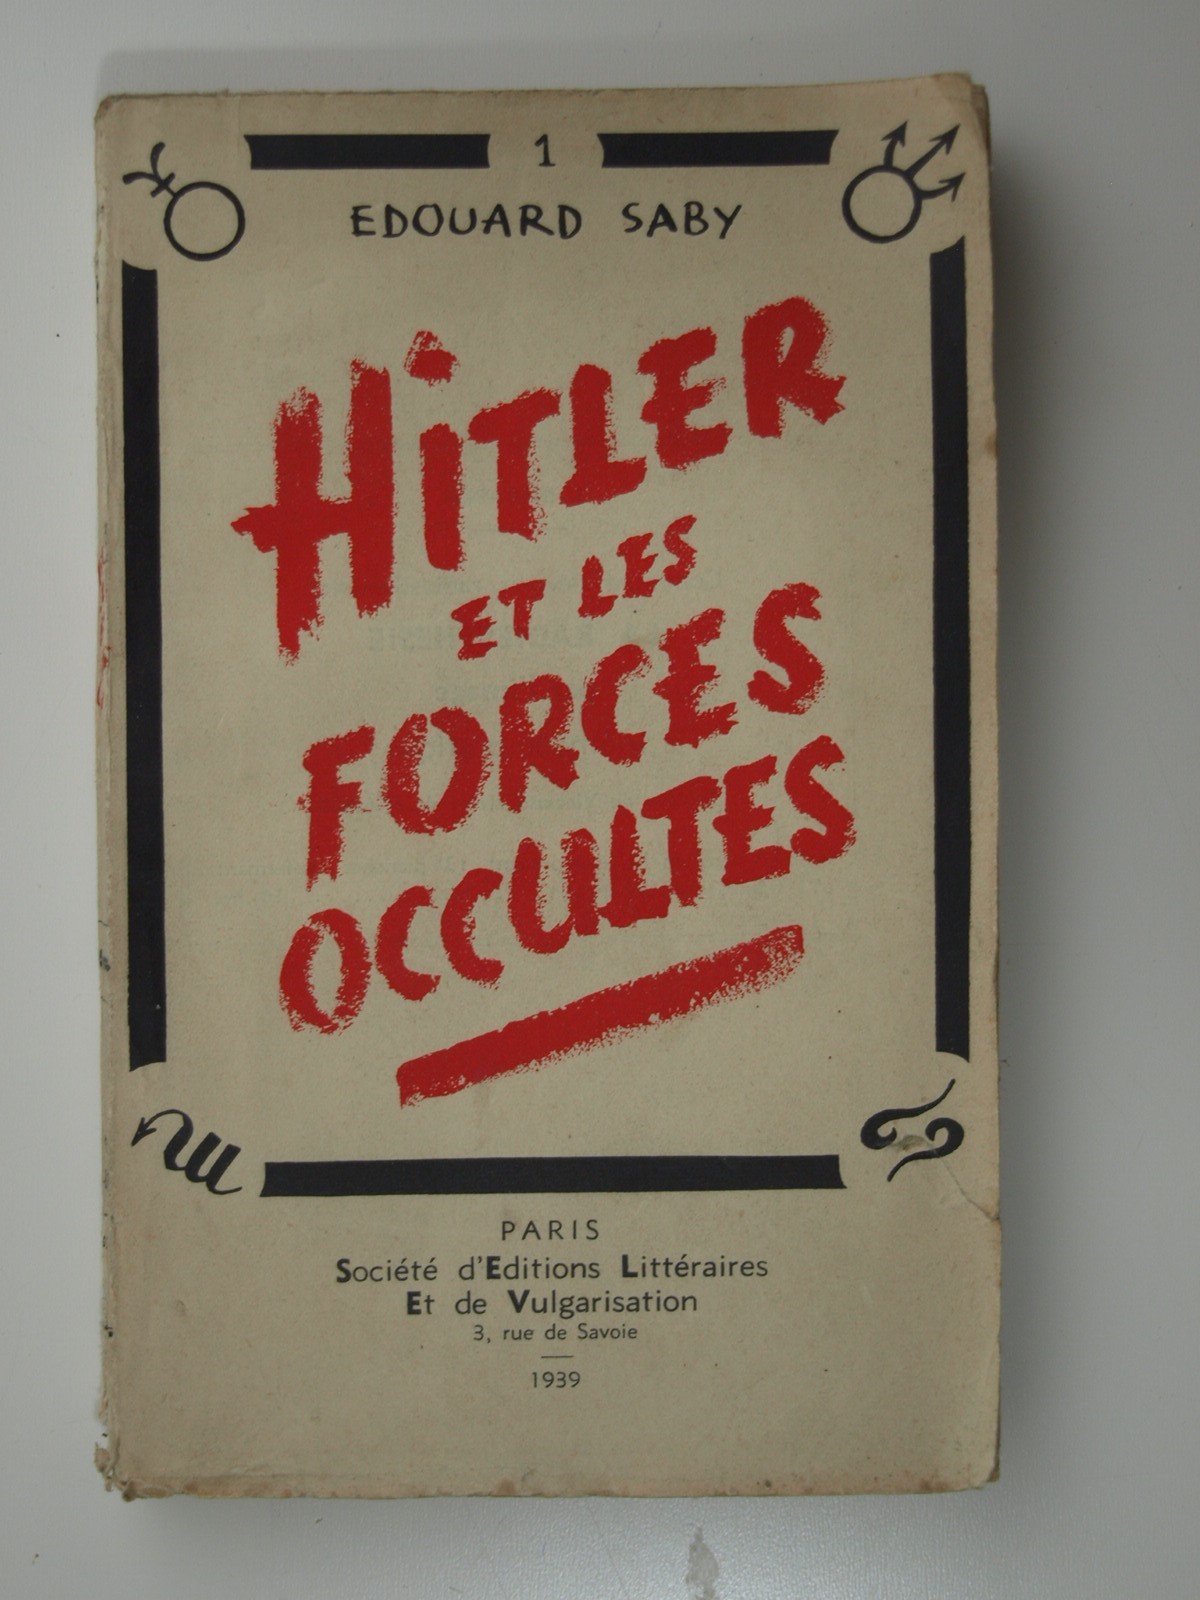 Saby Édouard : Hitler et les forces occultes.